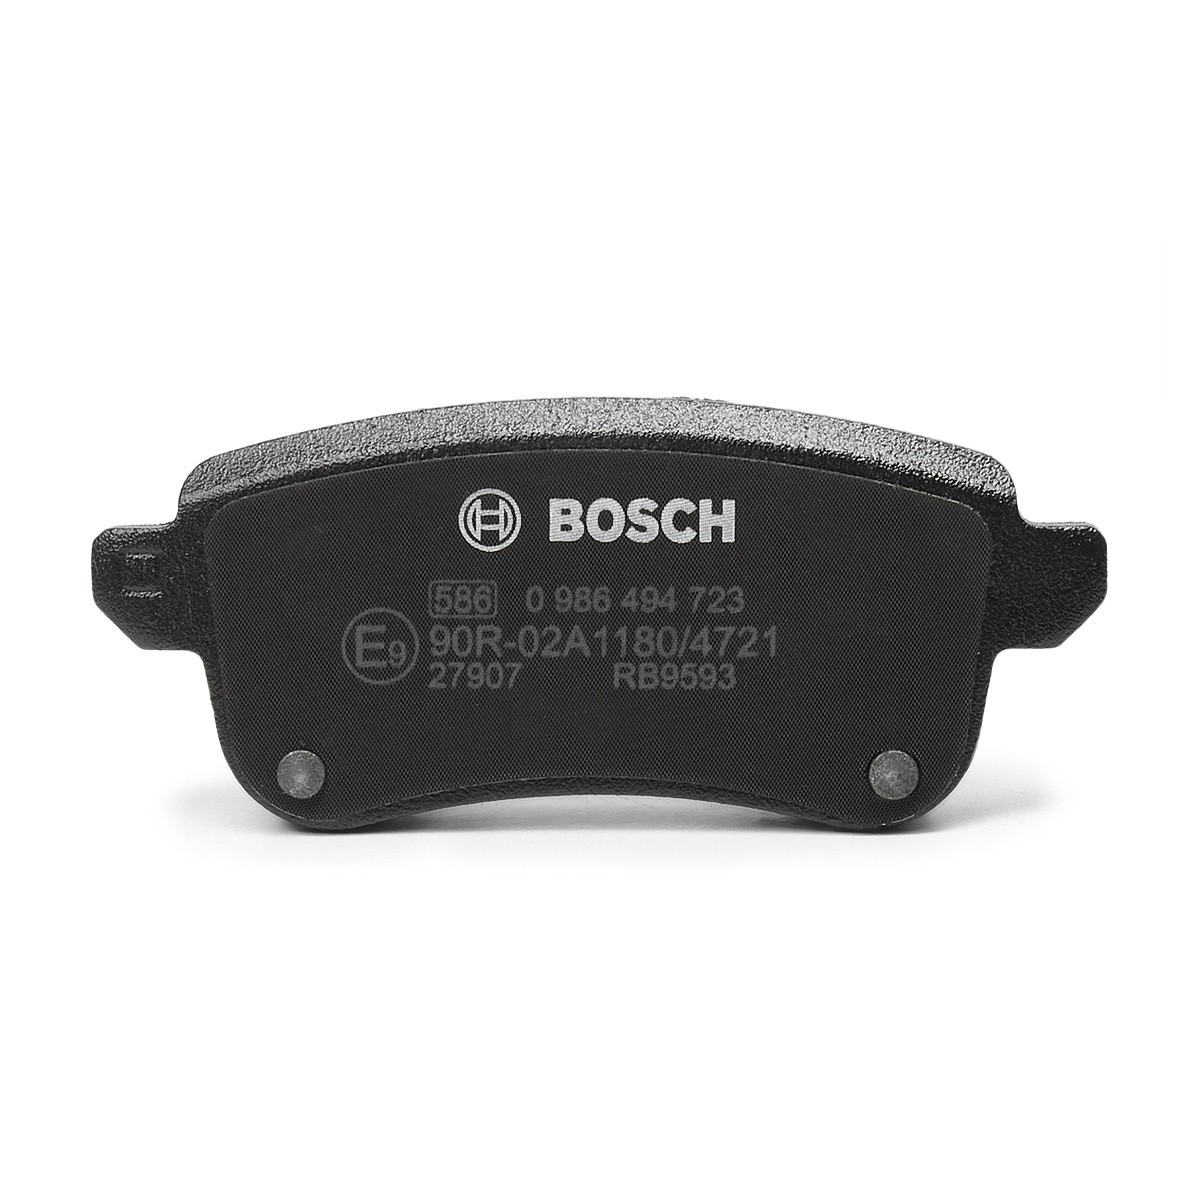 BOSCH E9-90R-02A1180/4721 Disc pads Low-Metallic